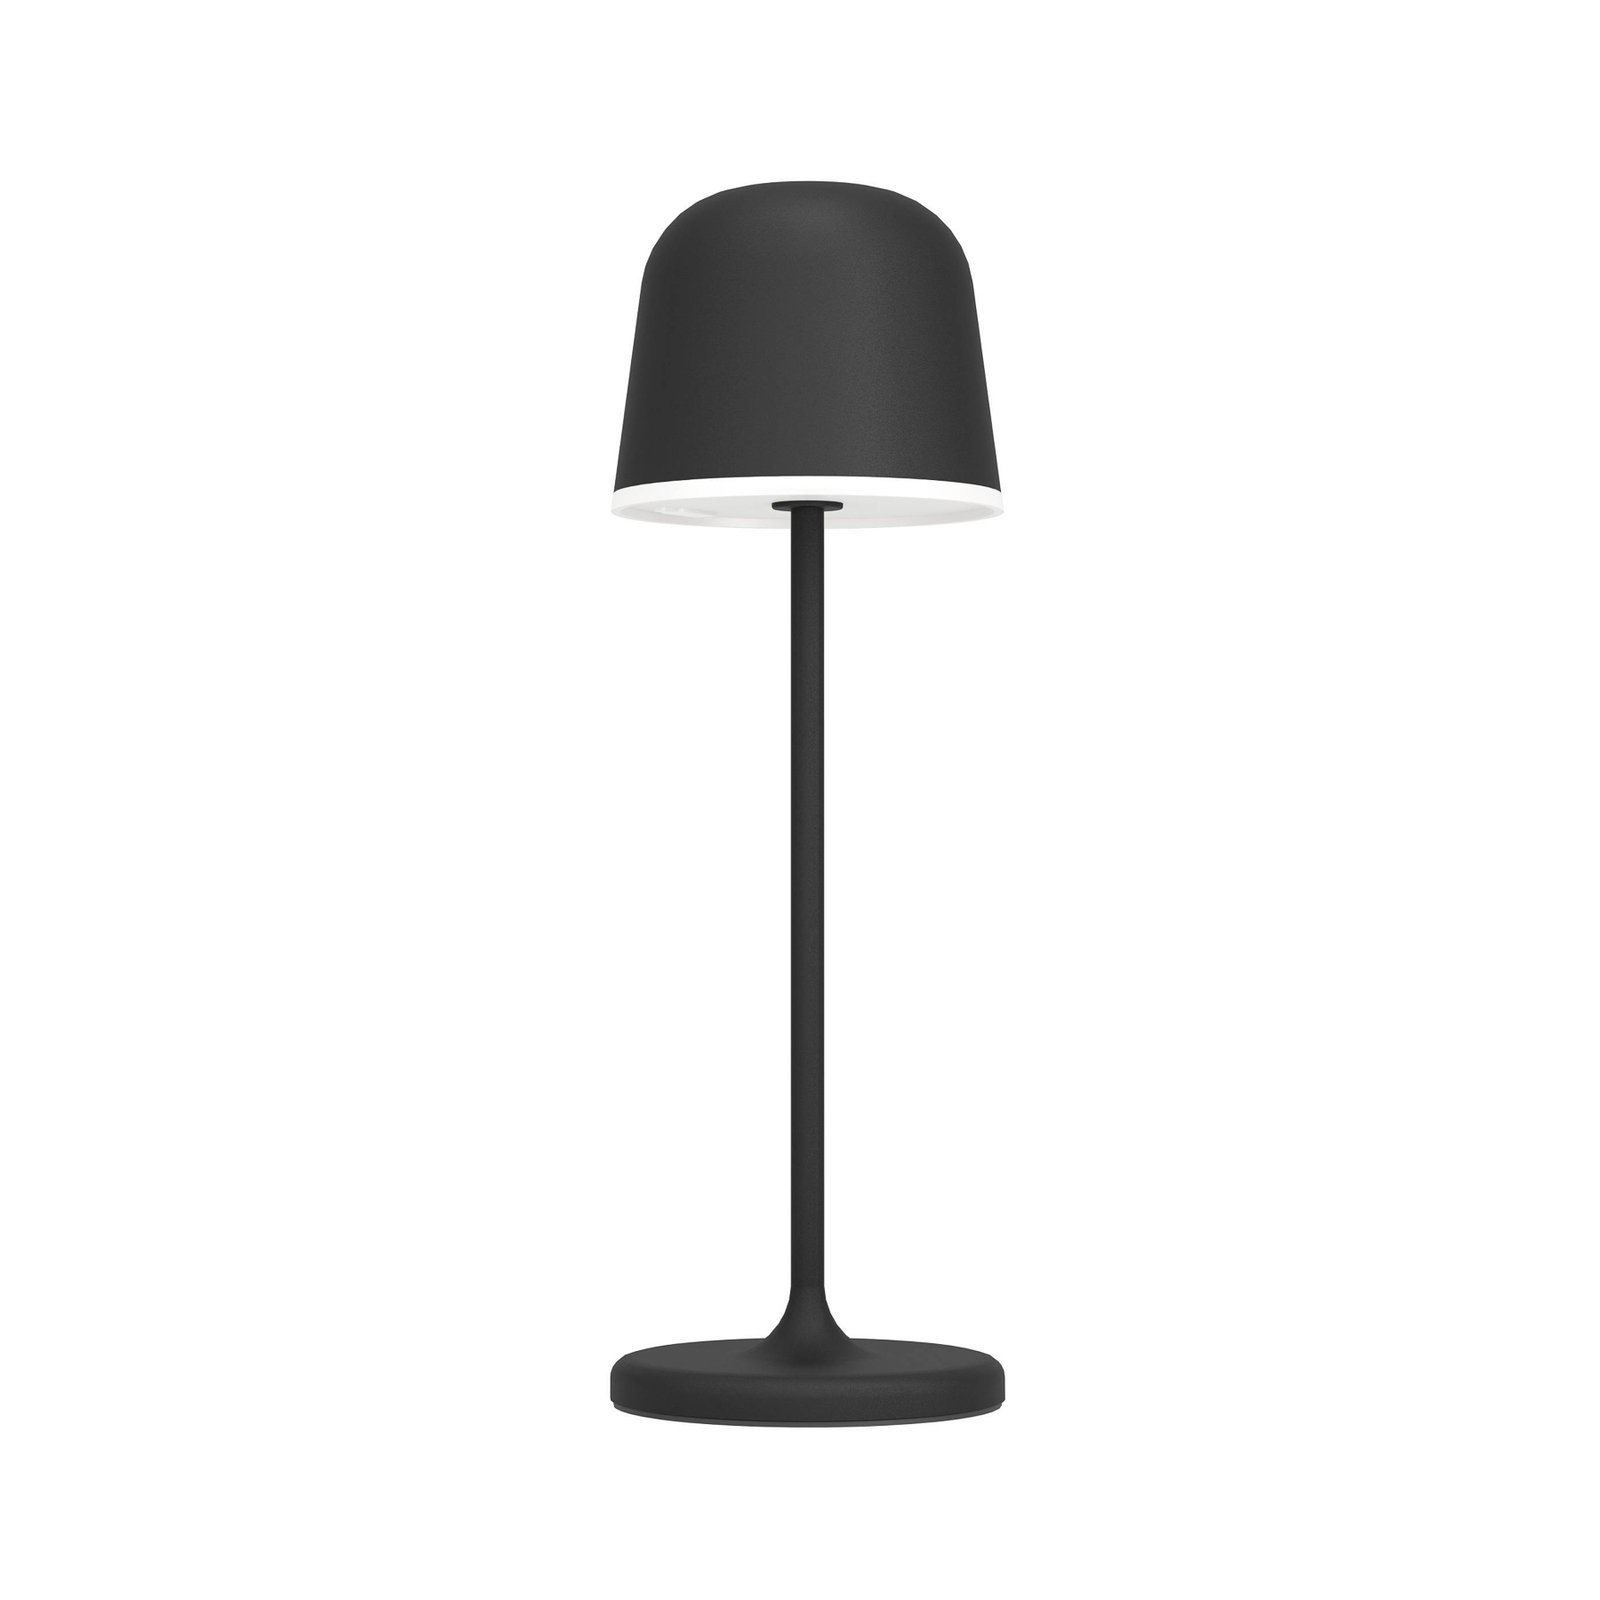 LED tafellamp Mannera met accu, zwart